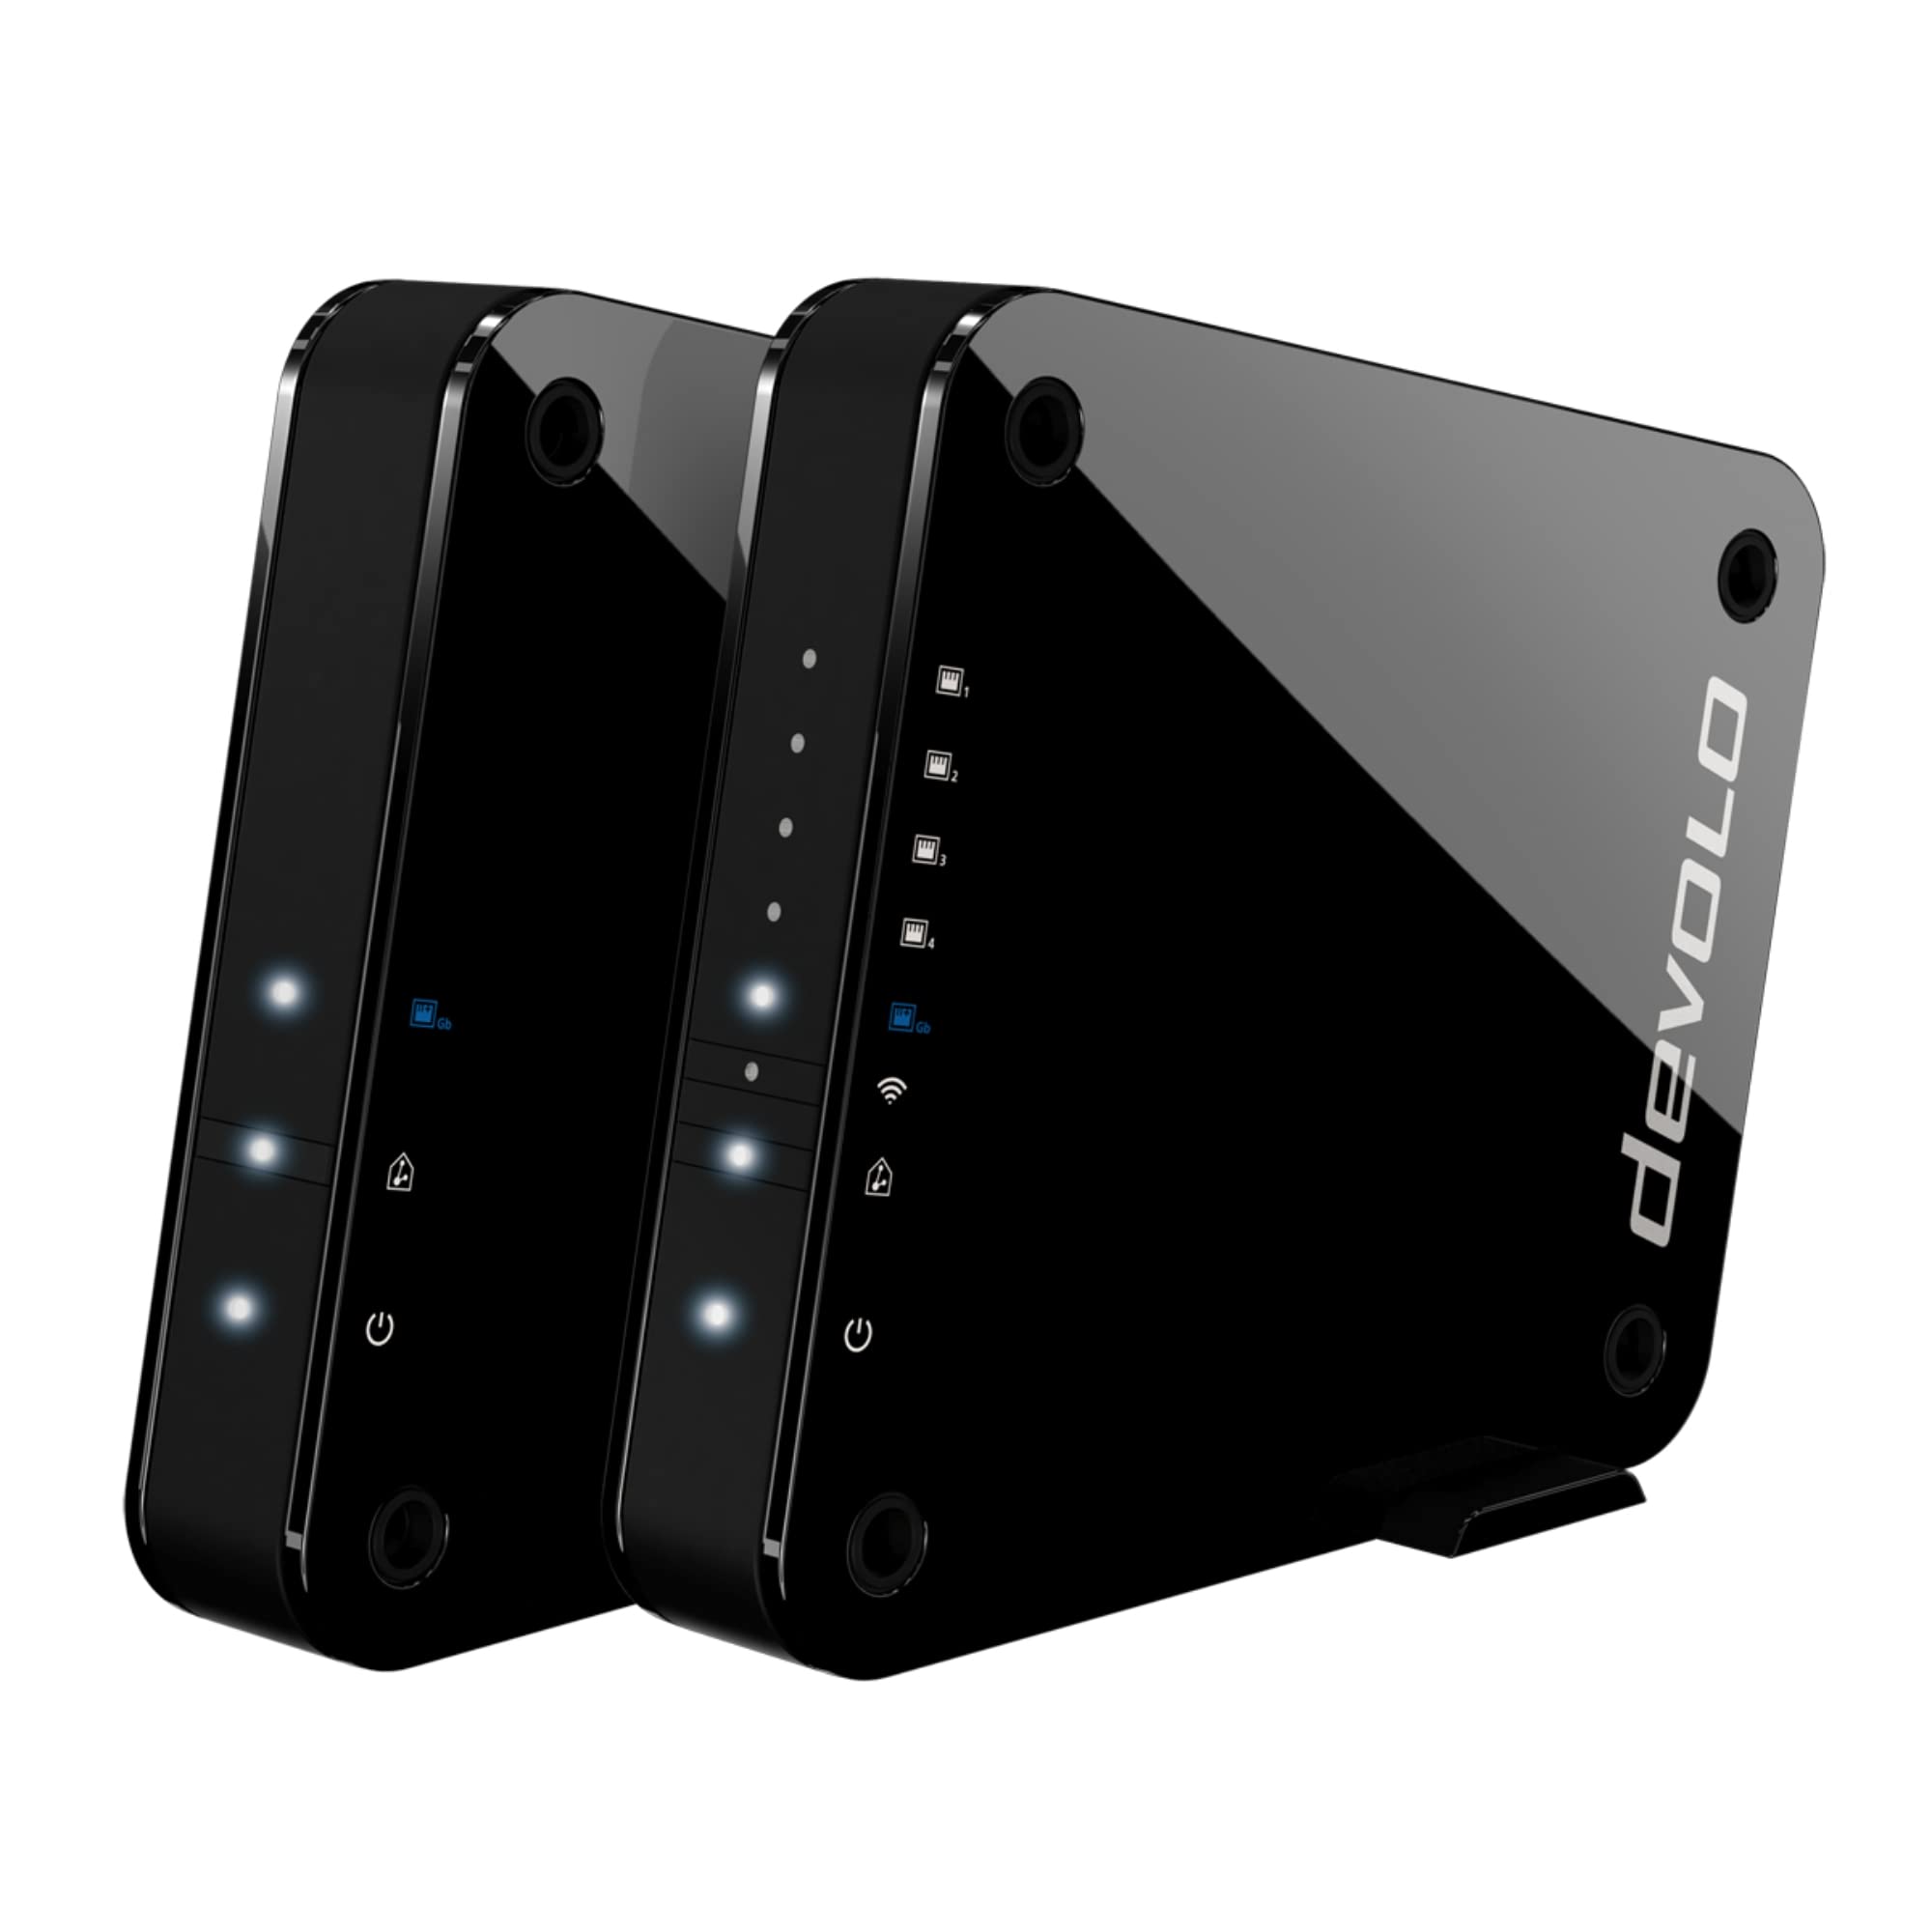 devolo GigaGate WLAN Starter Kit (2 Gbit/s Verbindung, 1x Highspeed Gigabit Port, 4x Fast Ethernet Ports, Punkt-zu-Punkt-Verbindung per 5GHz-Band, Highend-Multimedia-Erlebnis, AES Verschlüsselung)